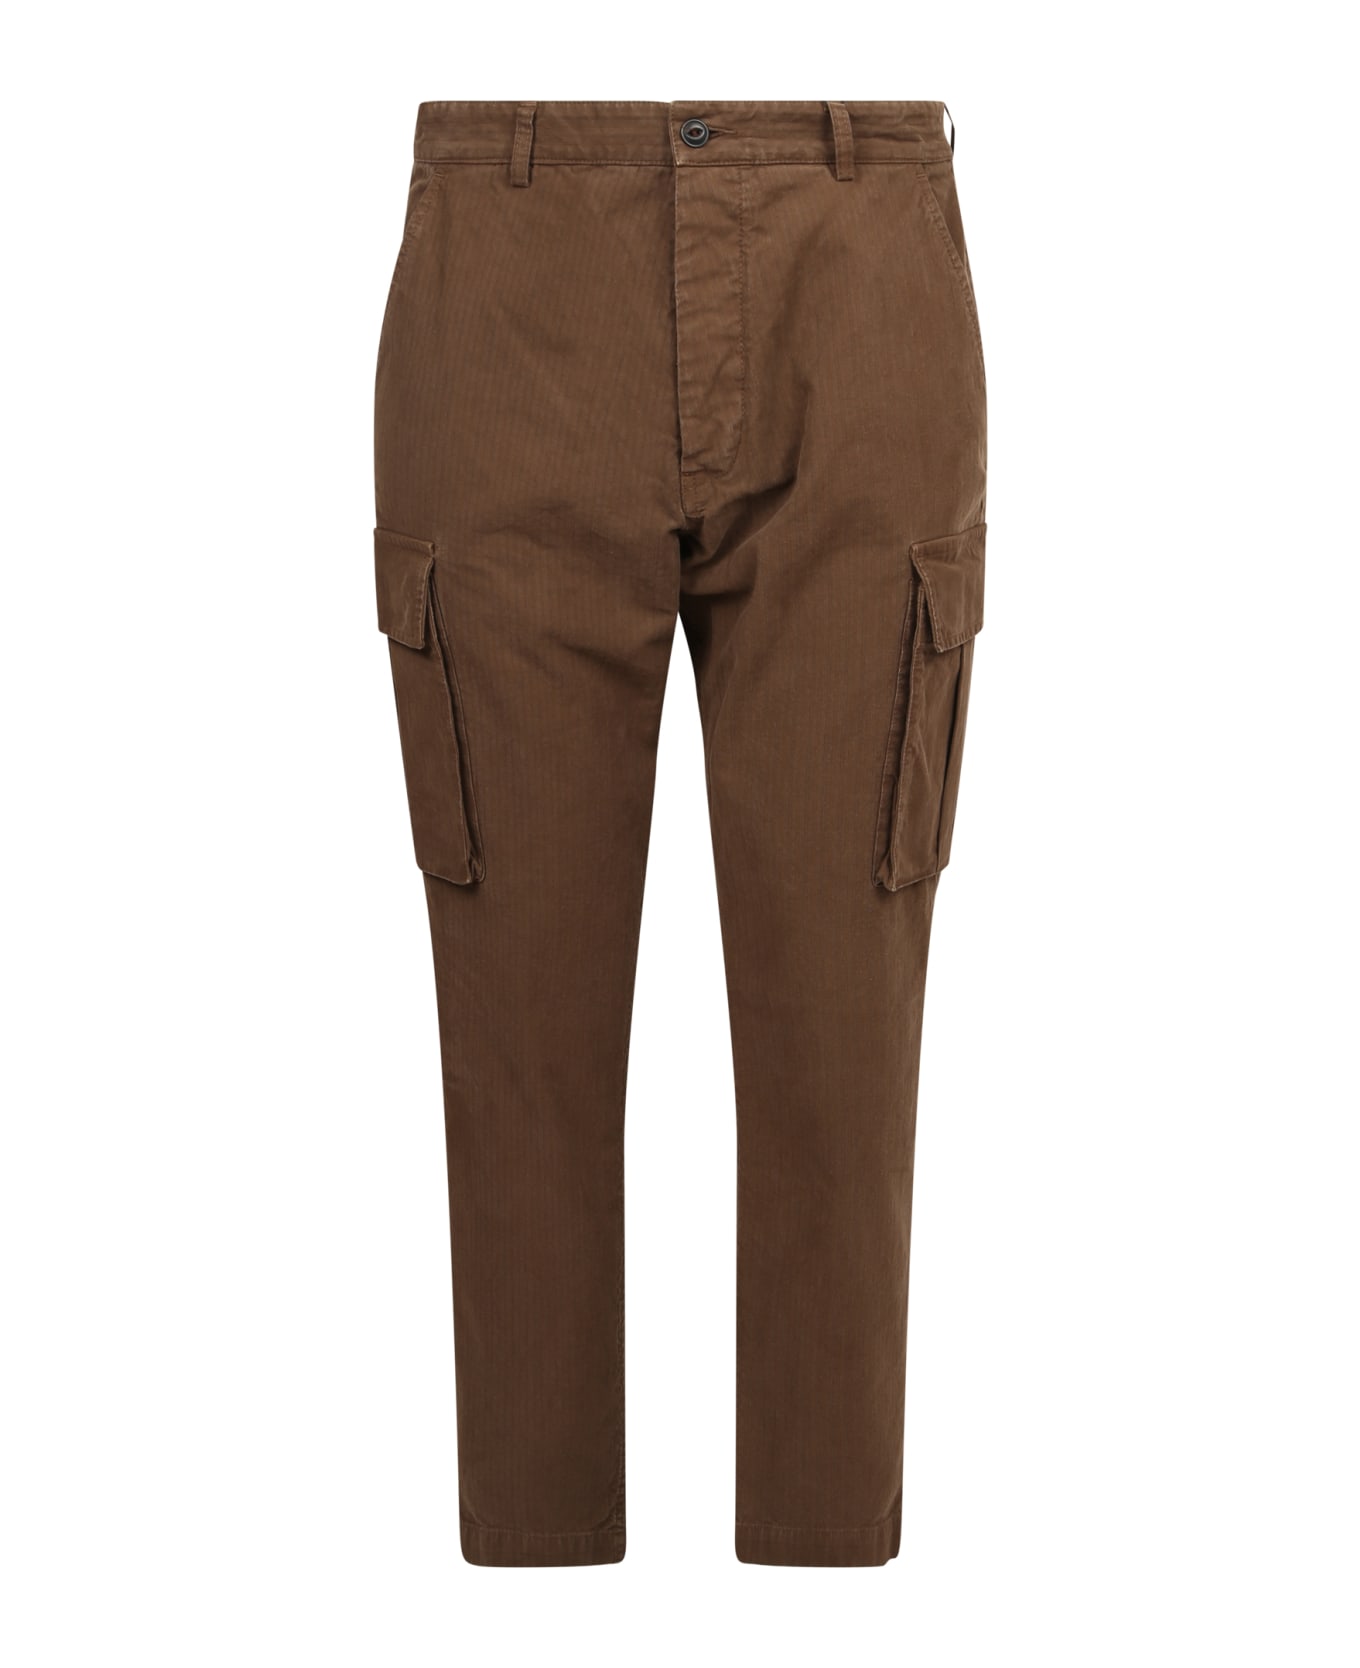 Original Vintage Style Brown Trousers - Brown